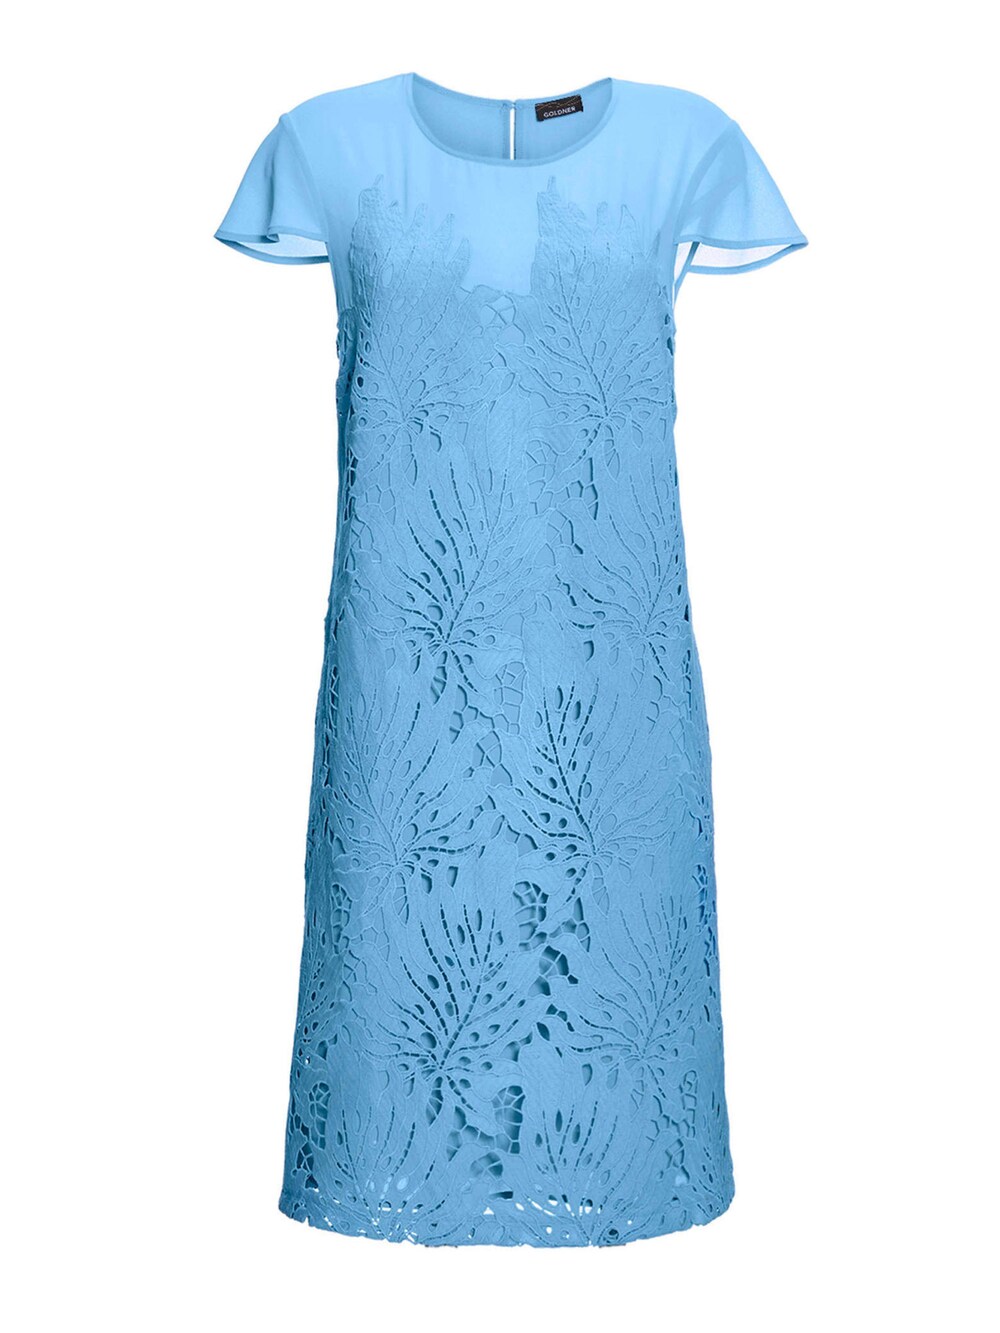 Коктейльное платье Goldner, голубое небо